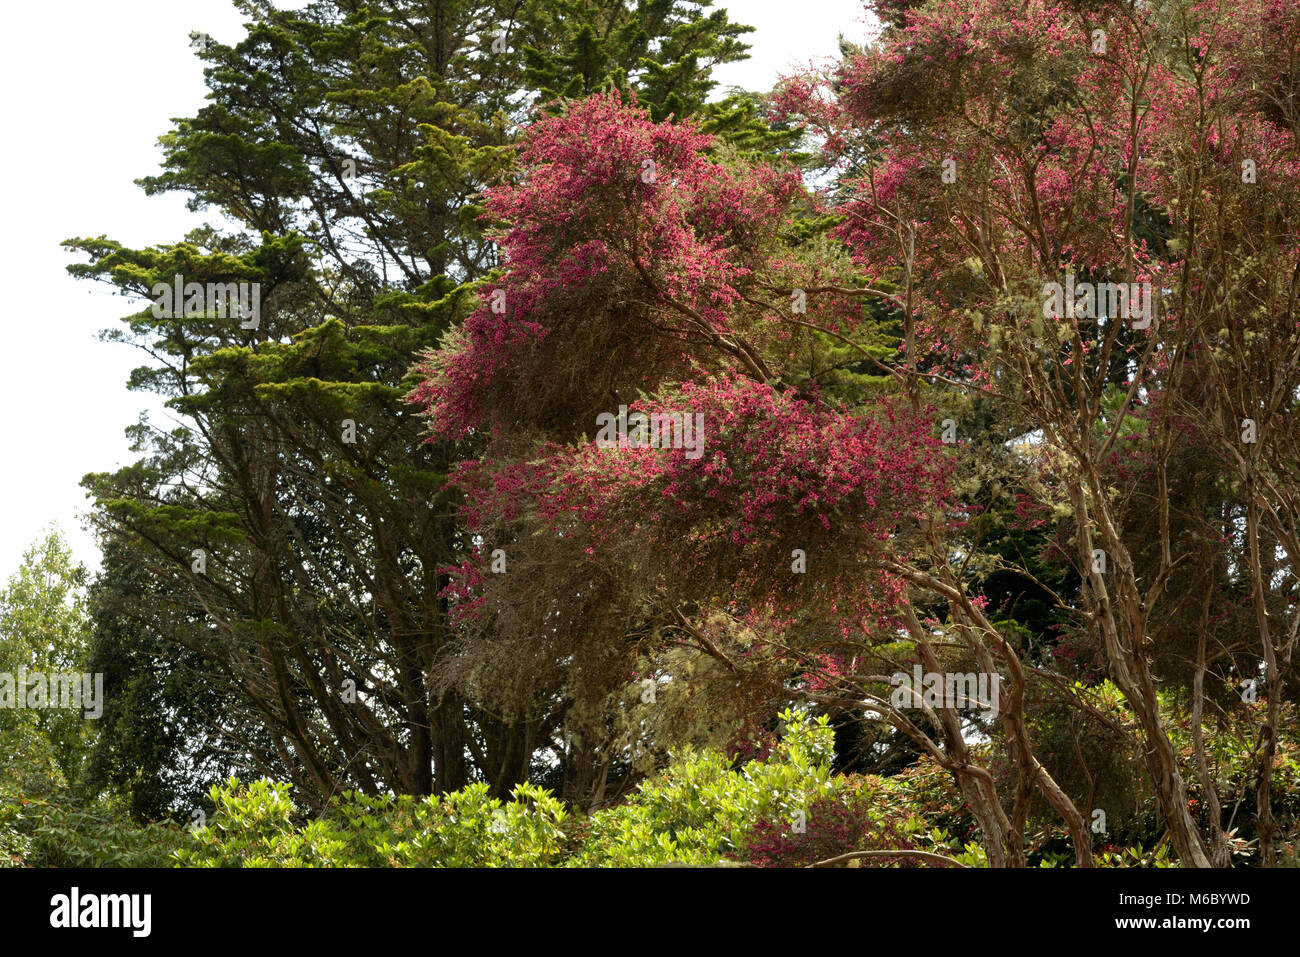 Broom Tea-tree, Leptospermum scoparium Stock Photo